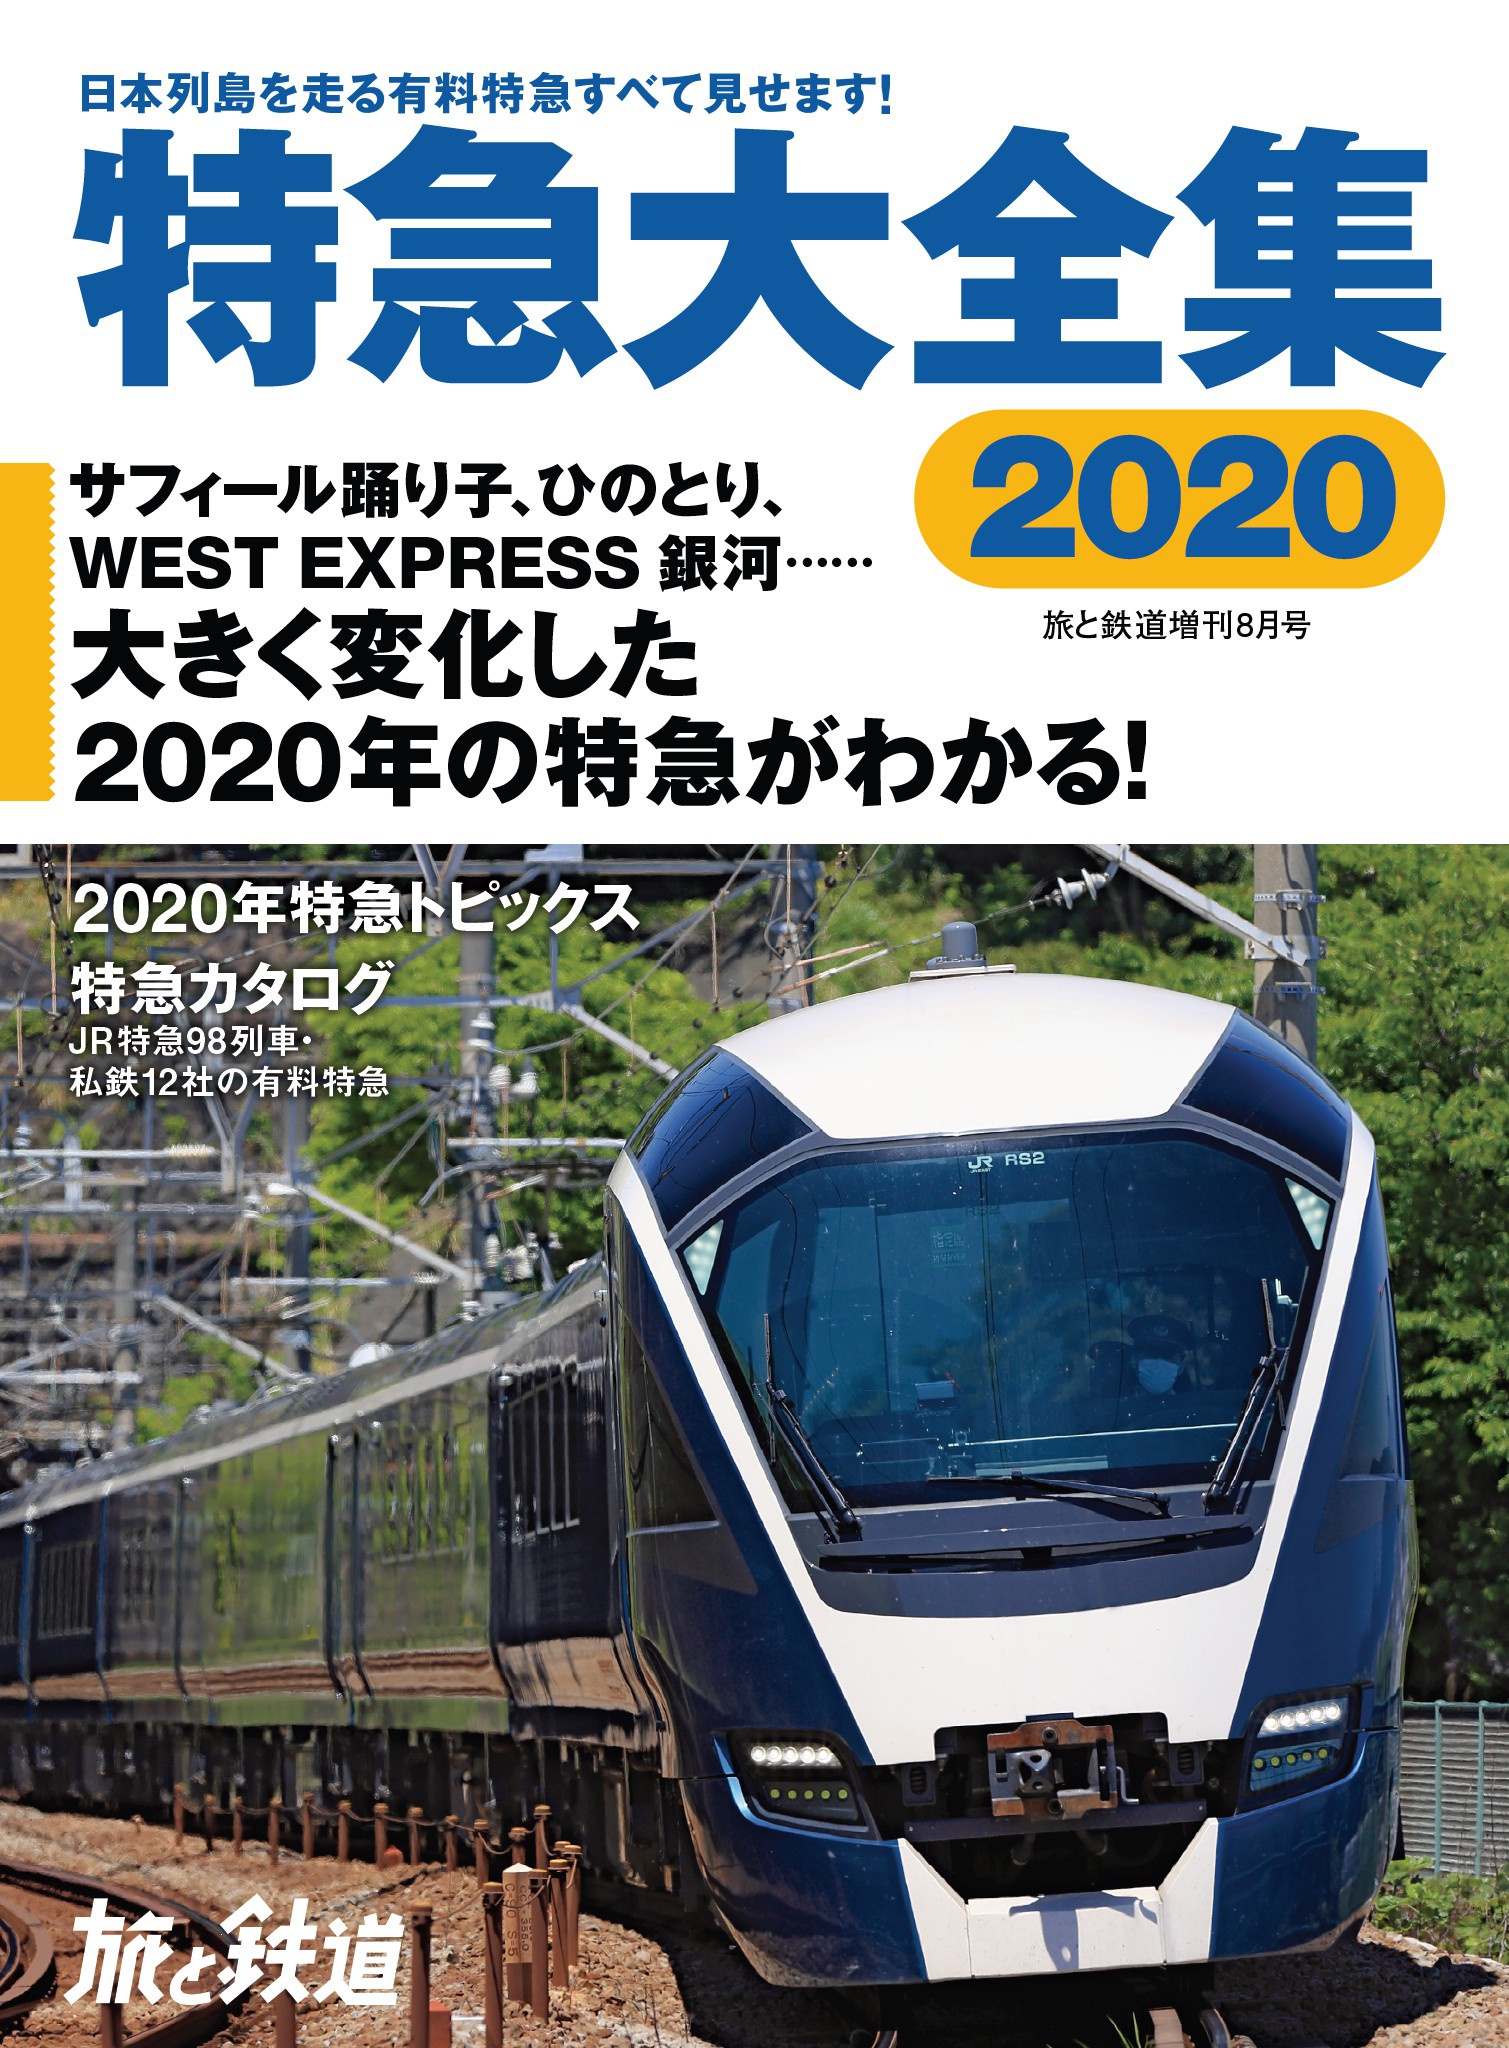 銀河 JR西日本 観光列車 列車 電車 鉄道 朝日新聞 印刷物 新聞 地方版 通販